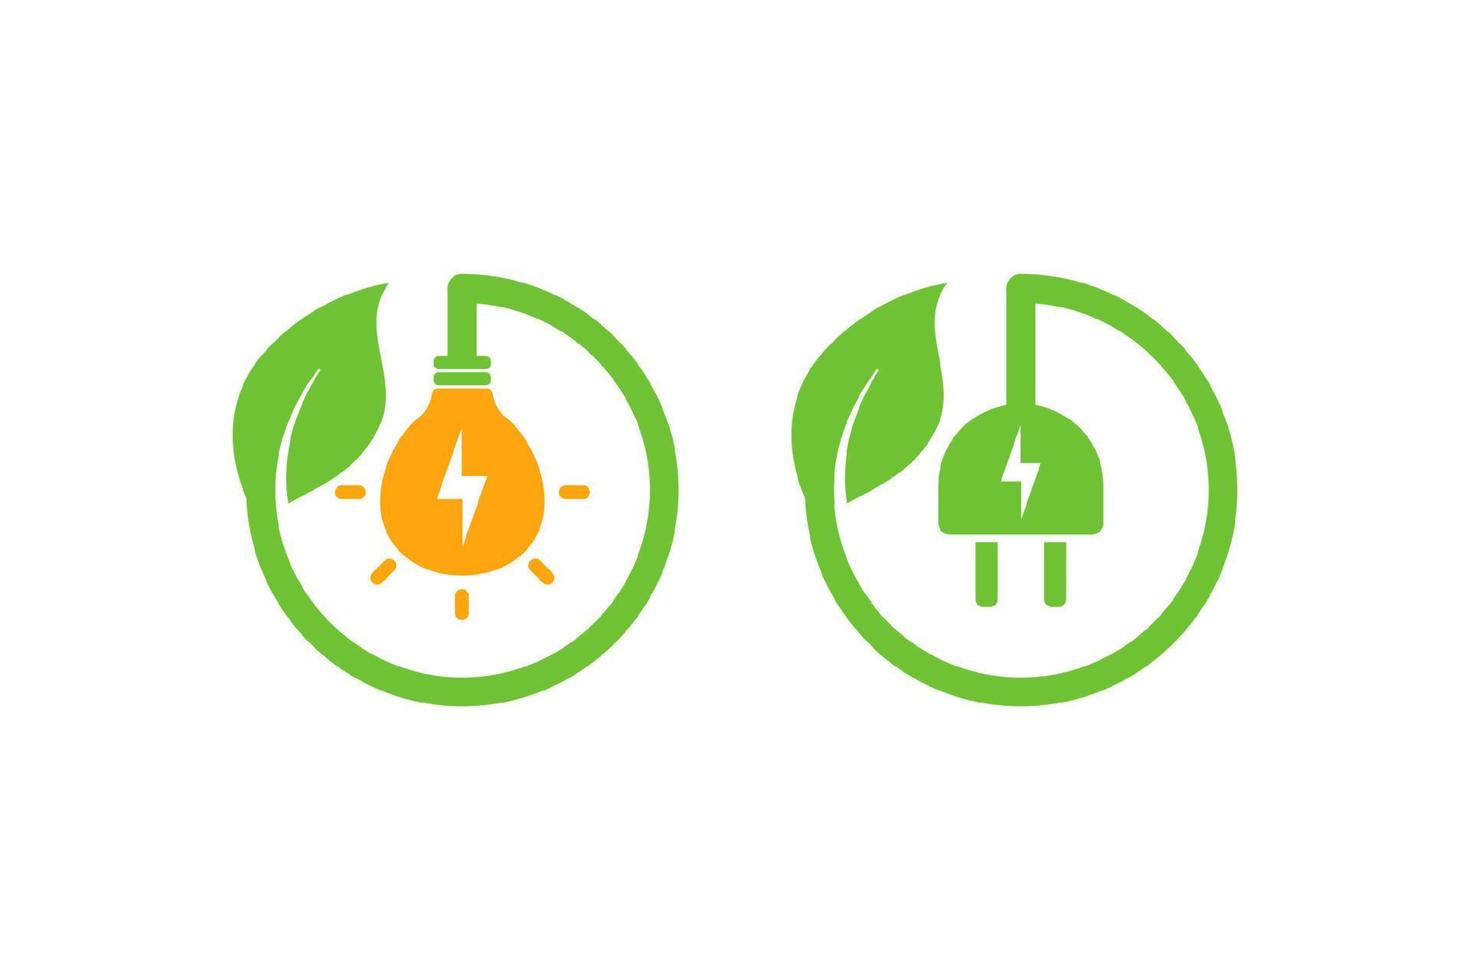 eco verde spina elettrica icona simbolo disegno vettoriale con foglia. segni di icone di energia verde eco con forma di lampadina.